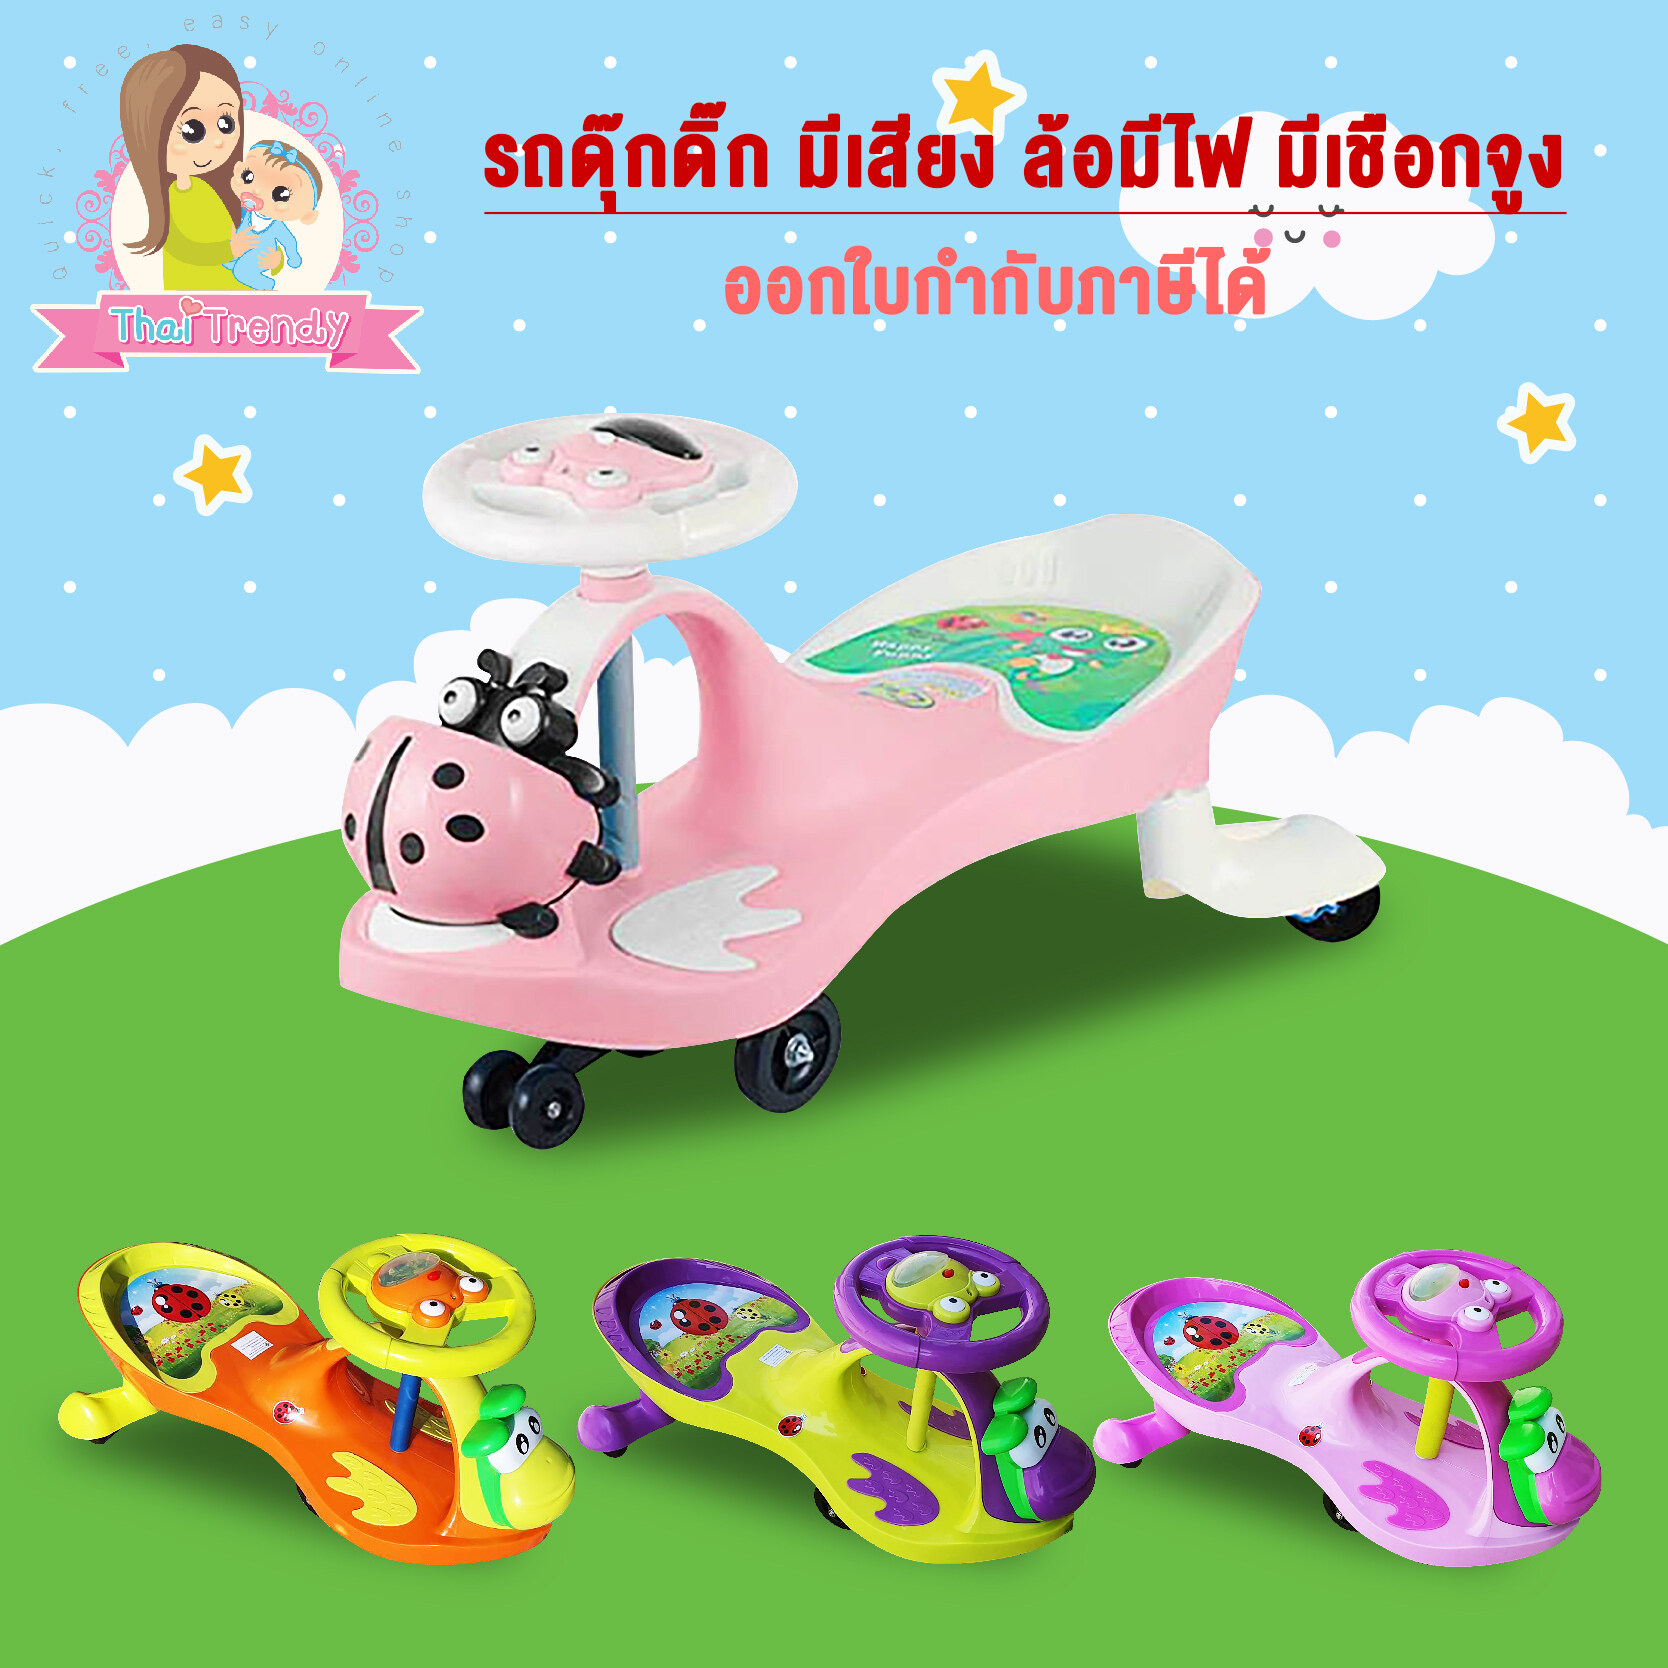 Thaitrendy รถดุ๊กดิ๊ก รถเด็กแบบขาถีบ มีเสียง มีเชือกจูง